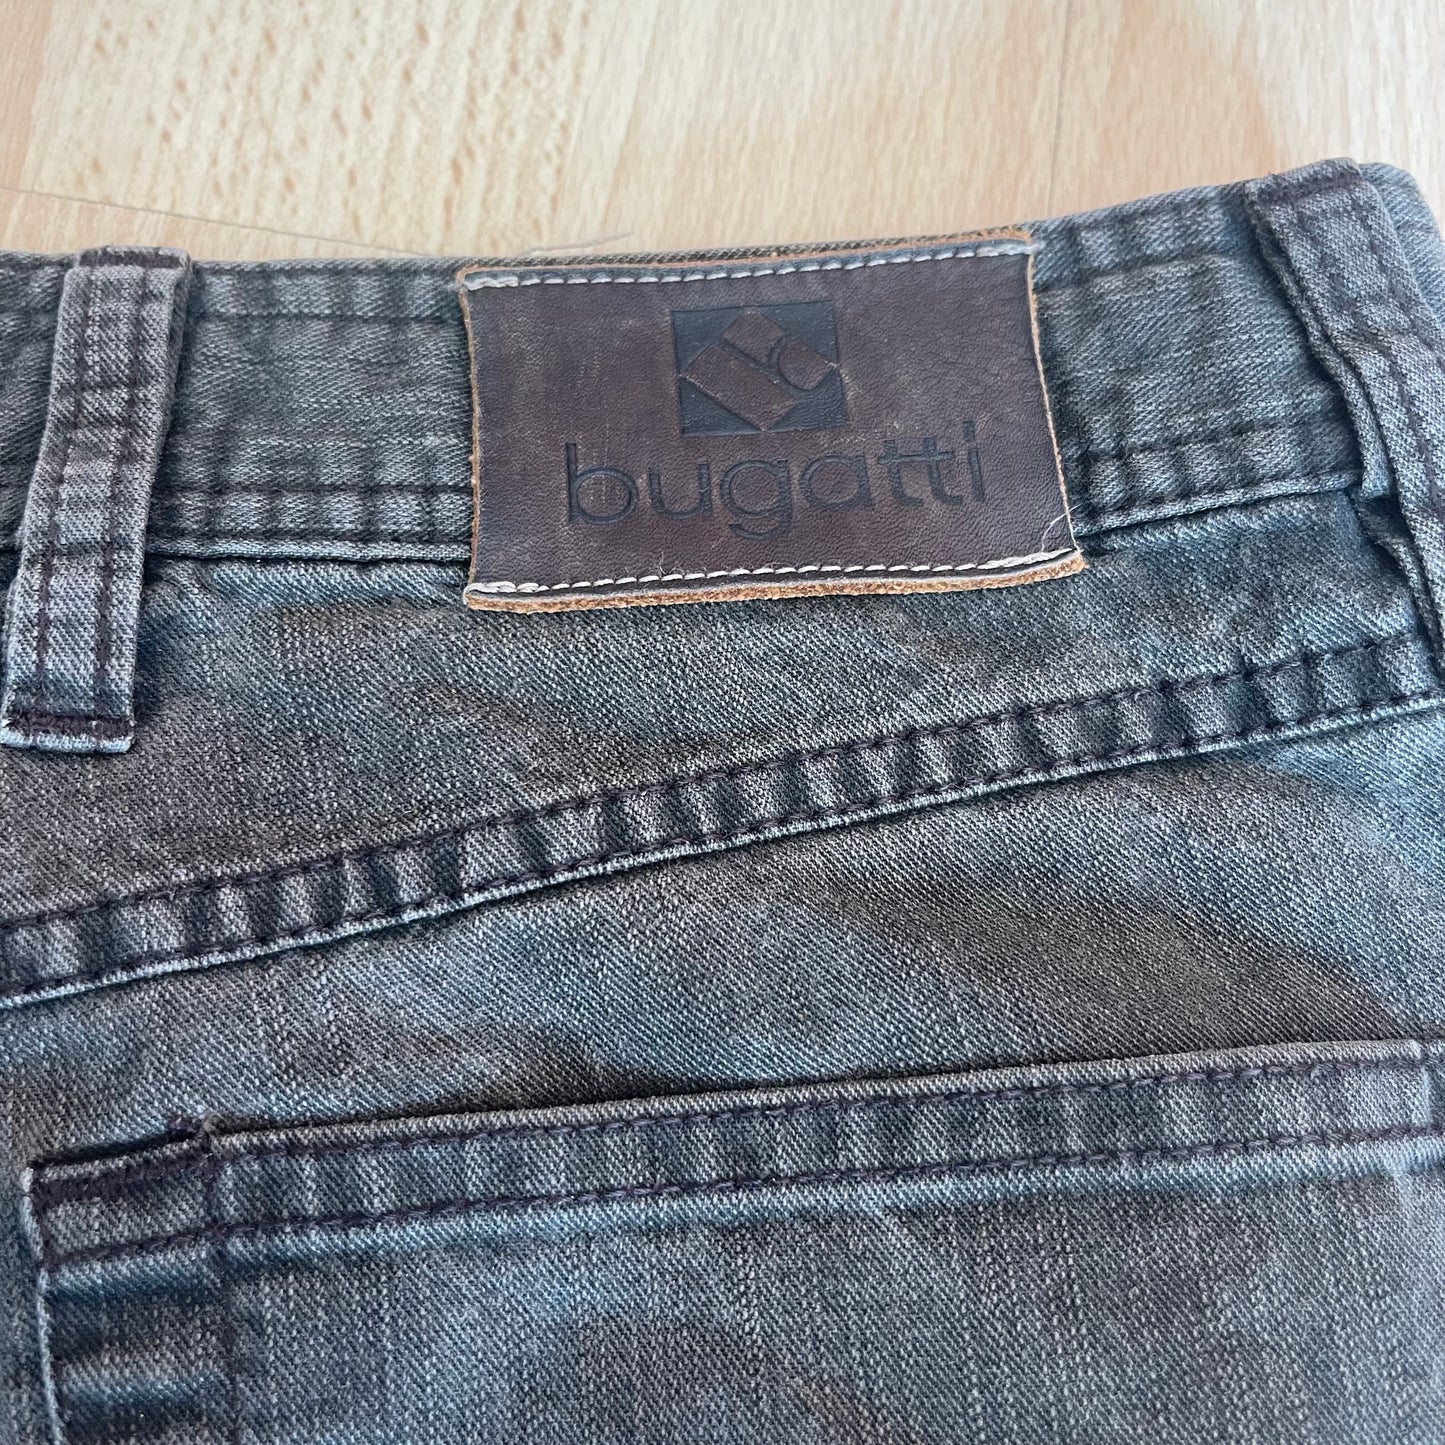 Jeans von Bugatti Herren XS / Damen S (32*32) grau-braun